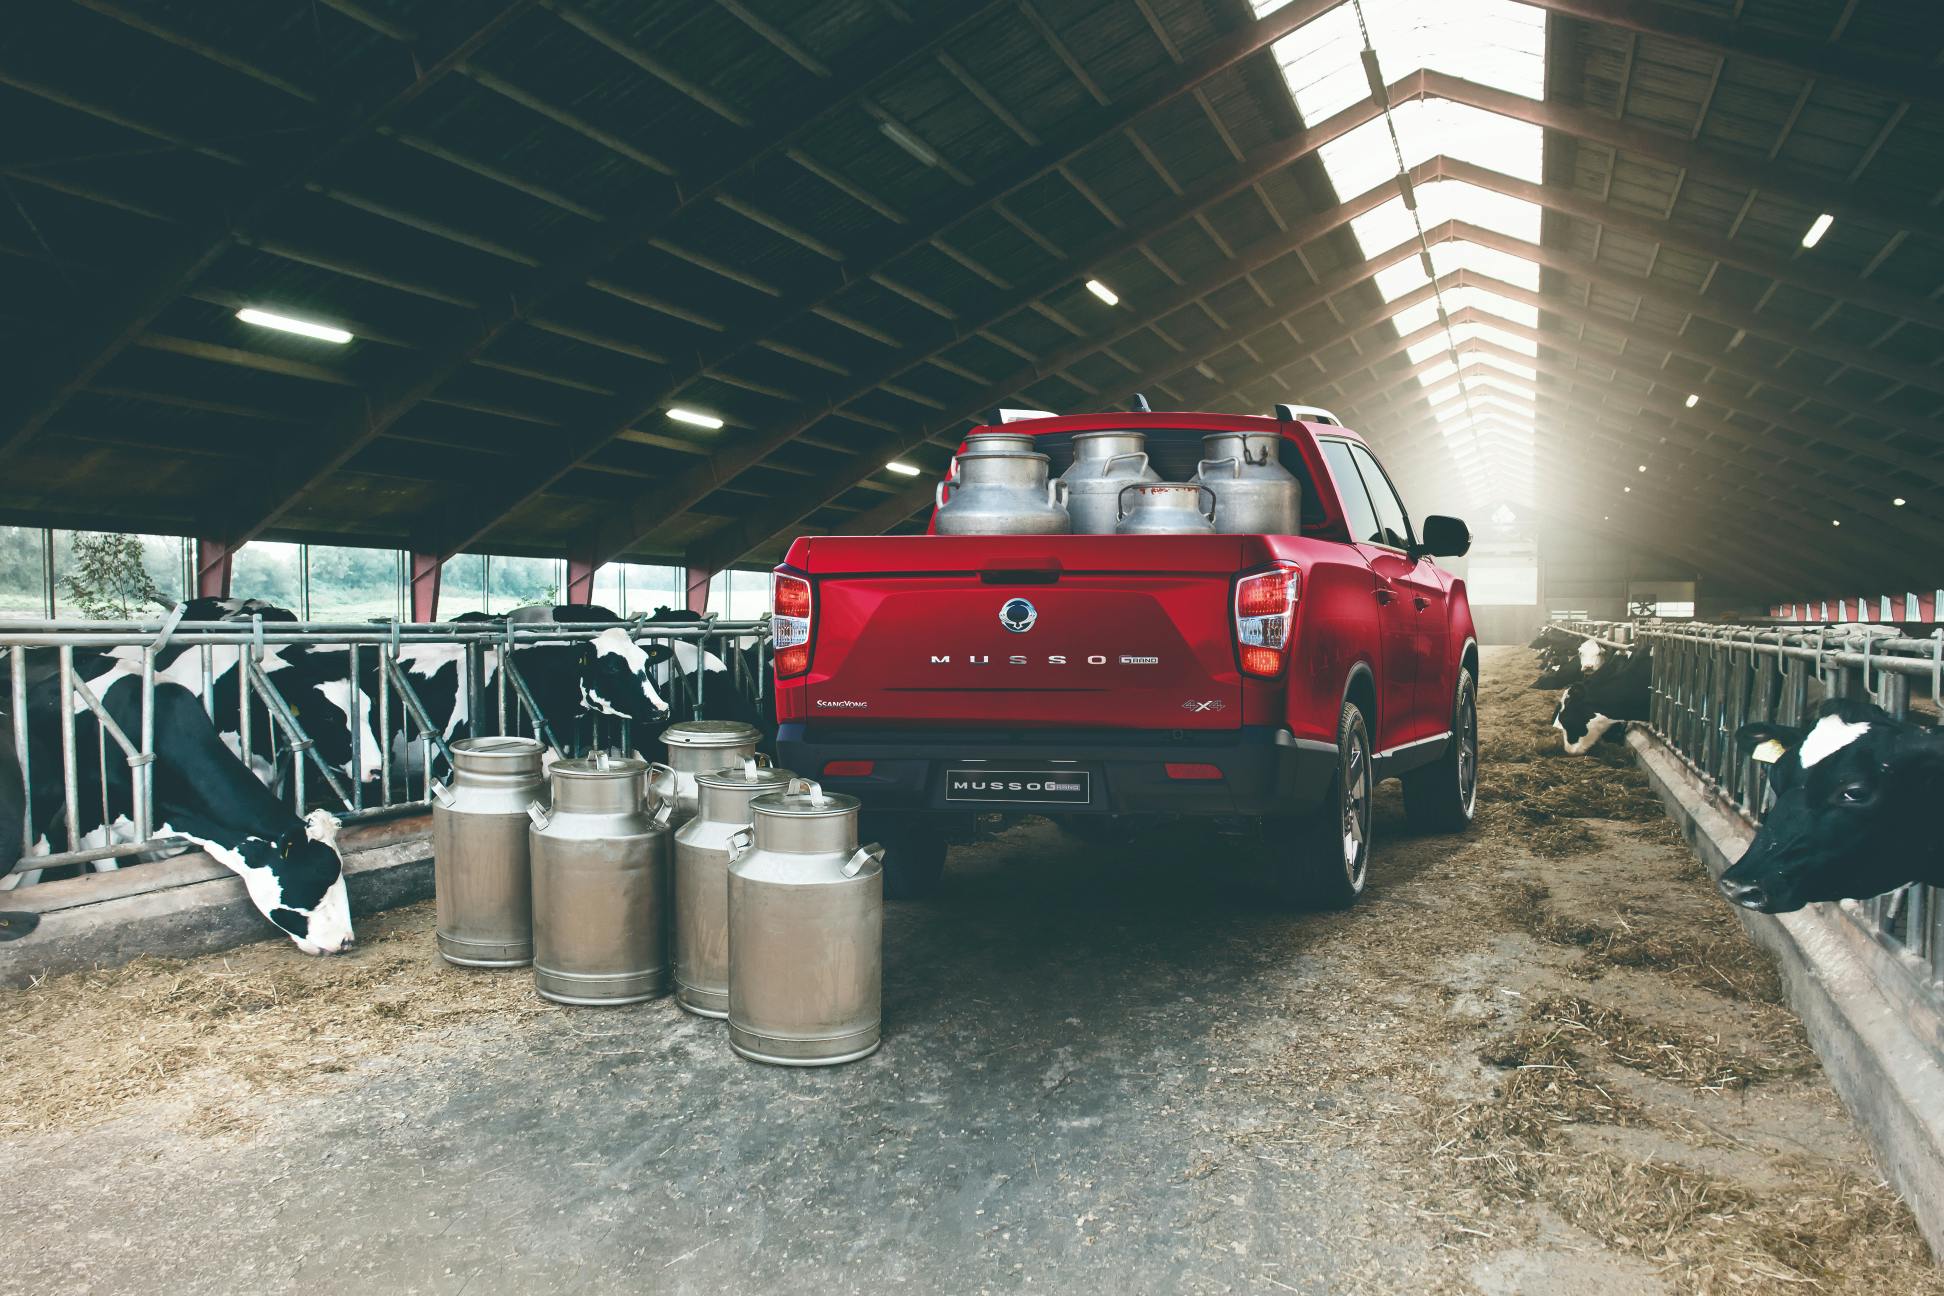 Een rode Grand Musso pick-up, geparkeerd in een boerderij waarbij de laadbak volgeladen is met melkkannen.